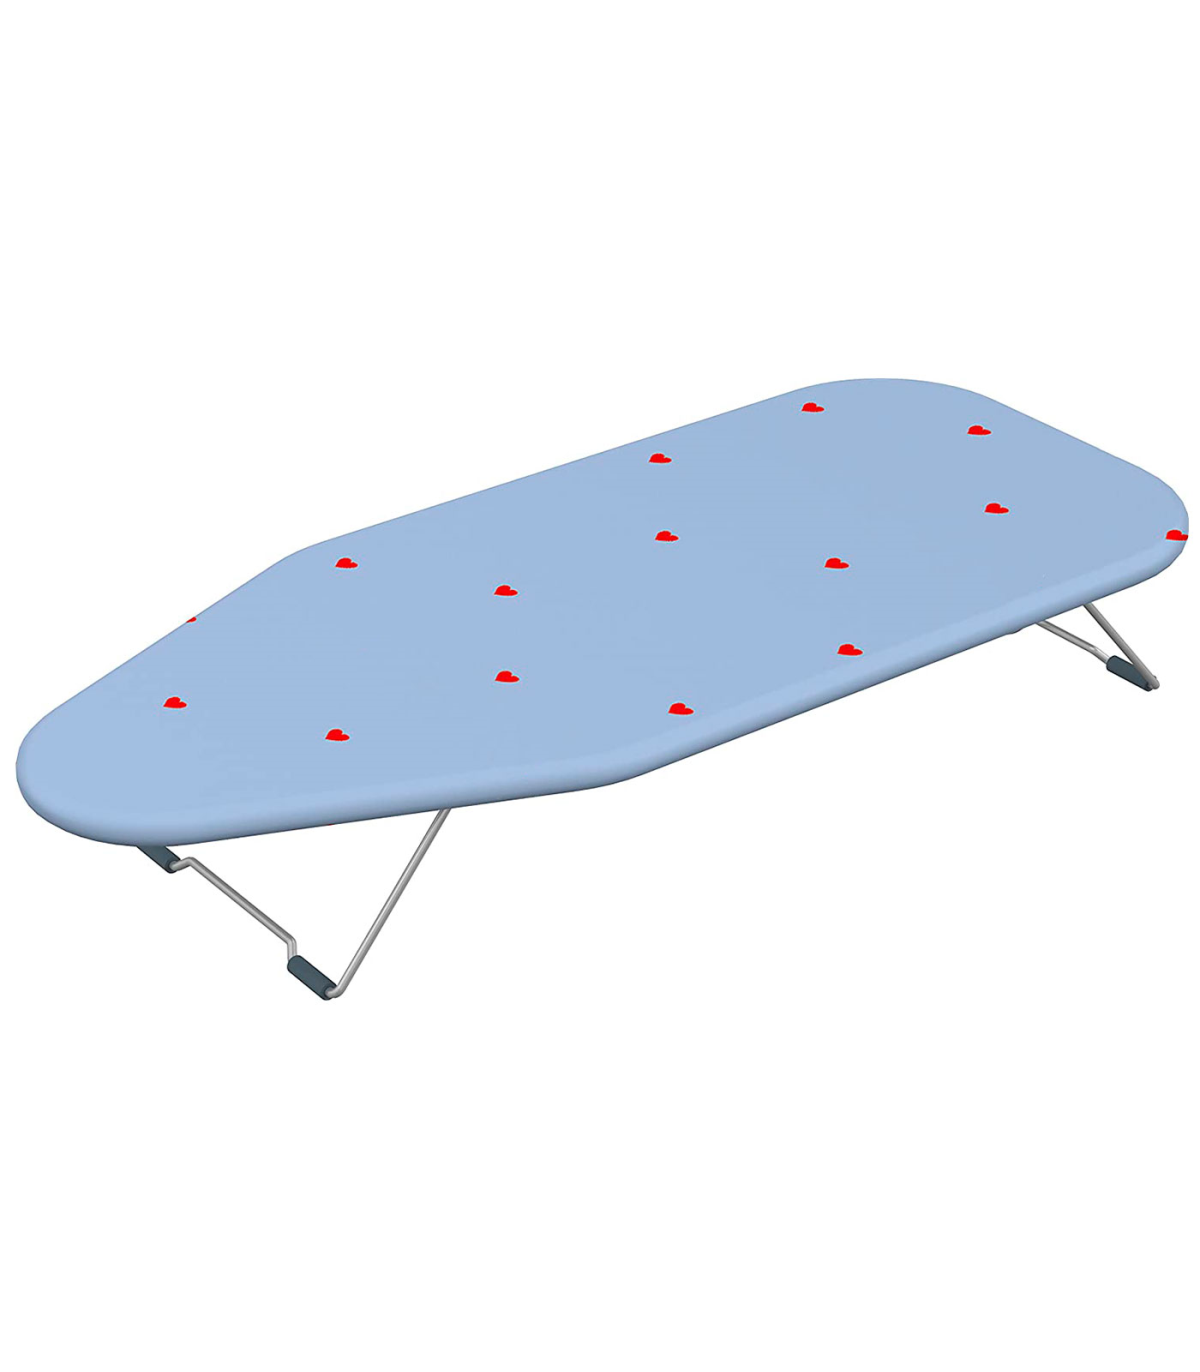 Tradineur - Tabla de planchar de metal y espuma, altura ajustable, soporte  para plancha, patas antideslizantes, 110 x 32 x 90 